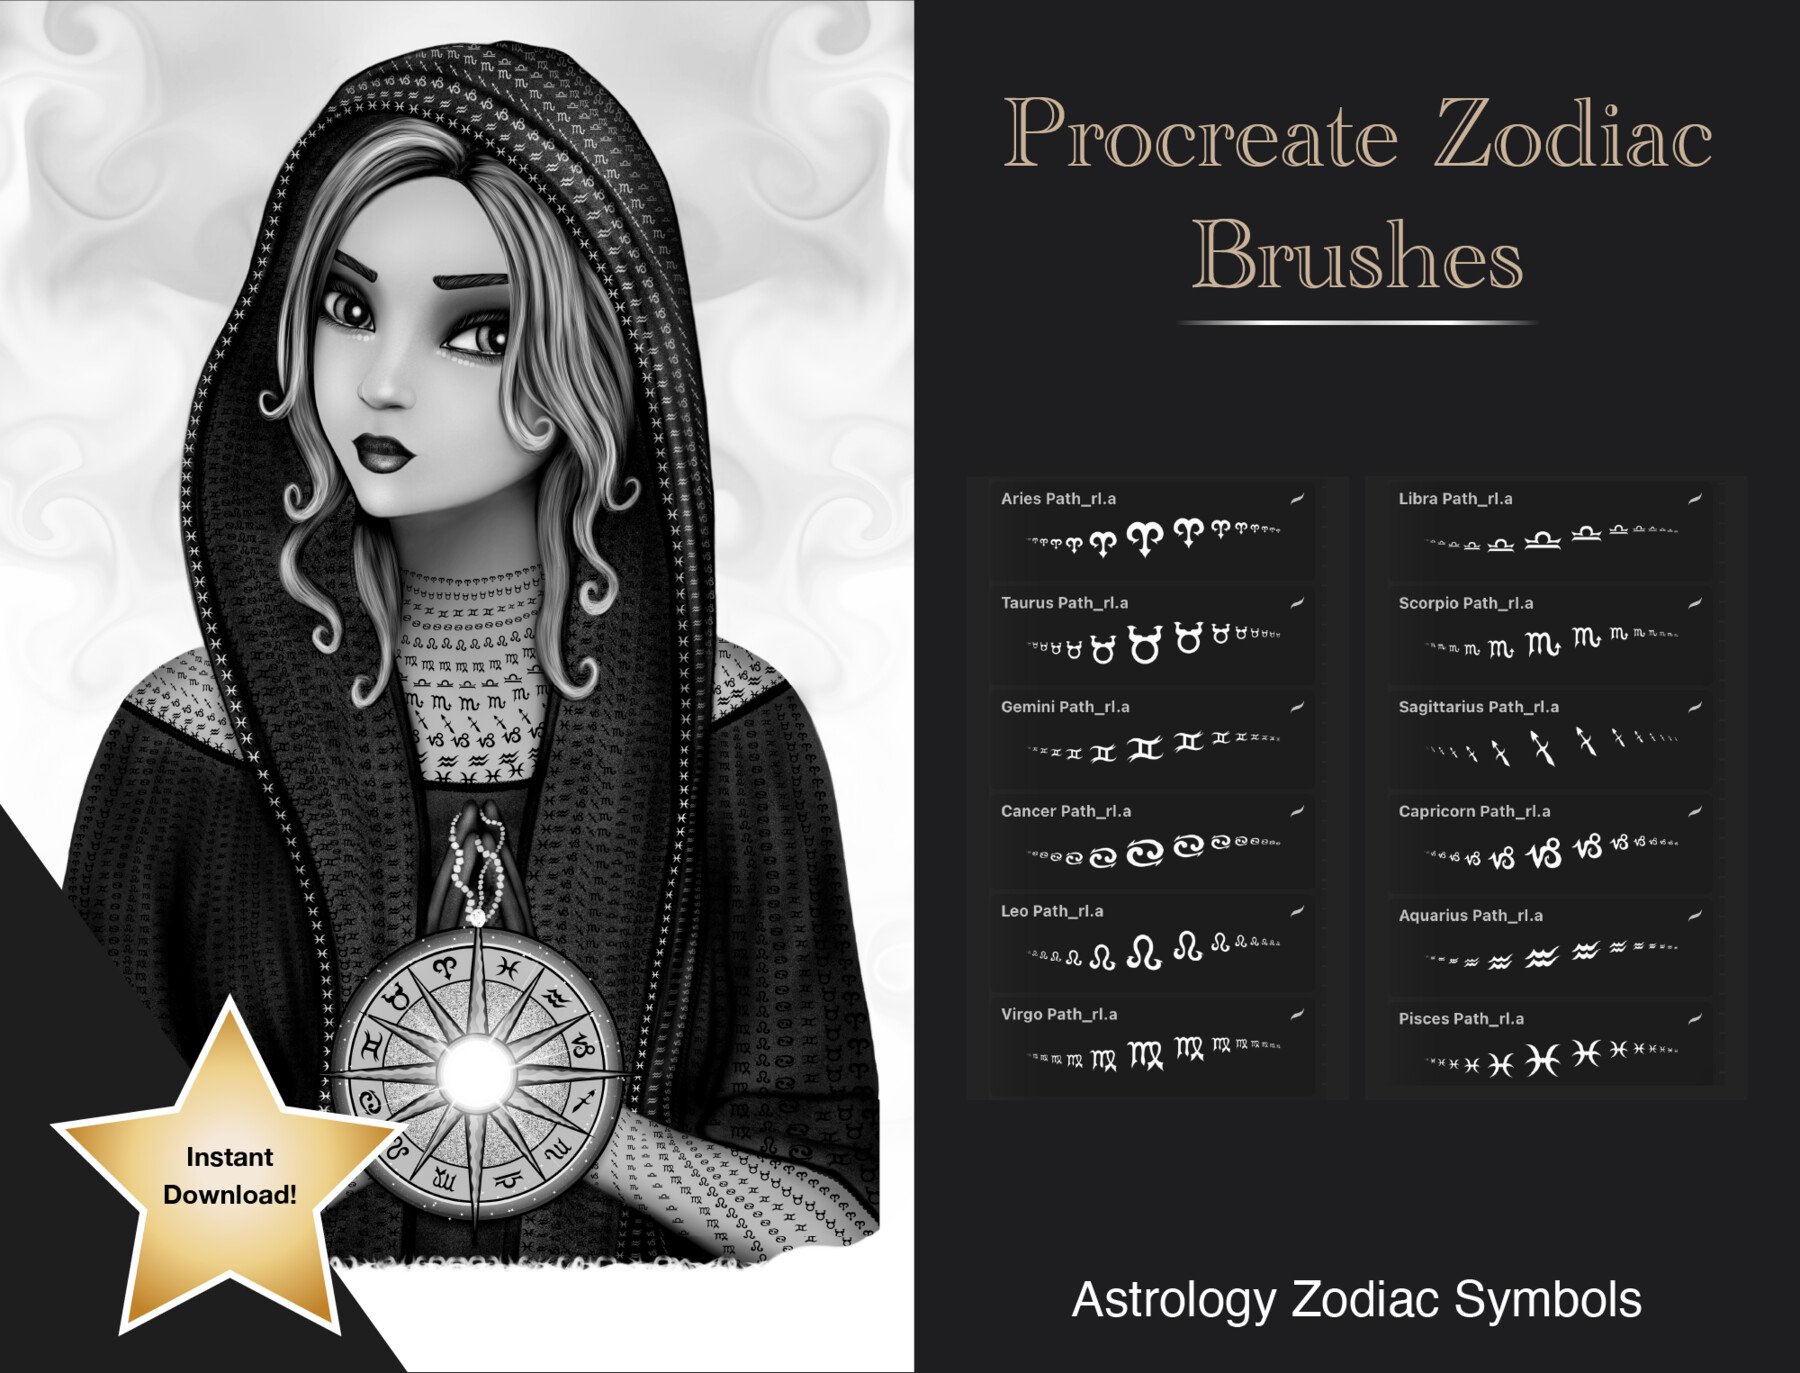 zodiac brushes procreate free